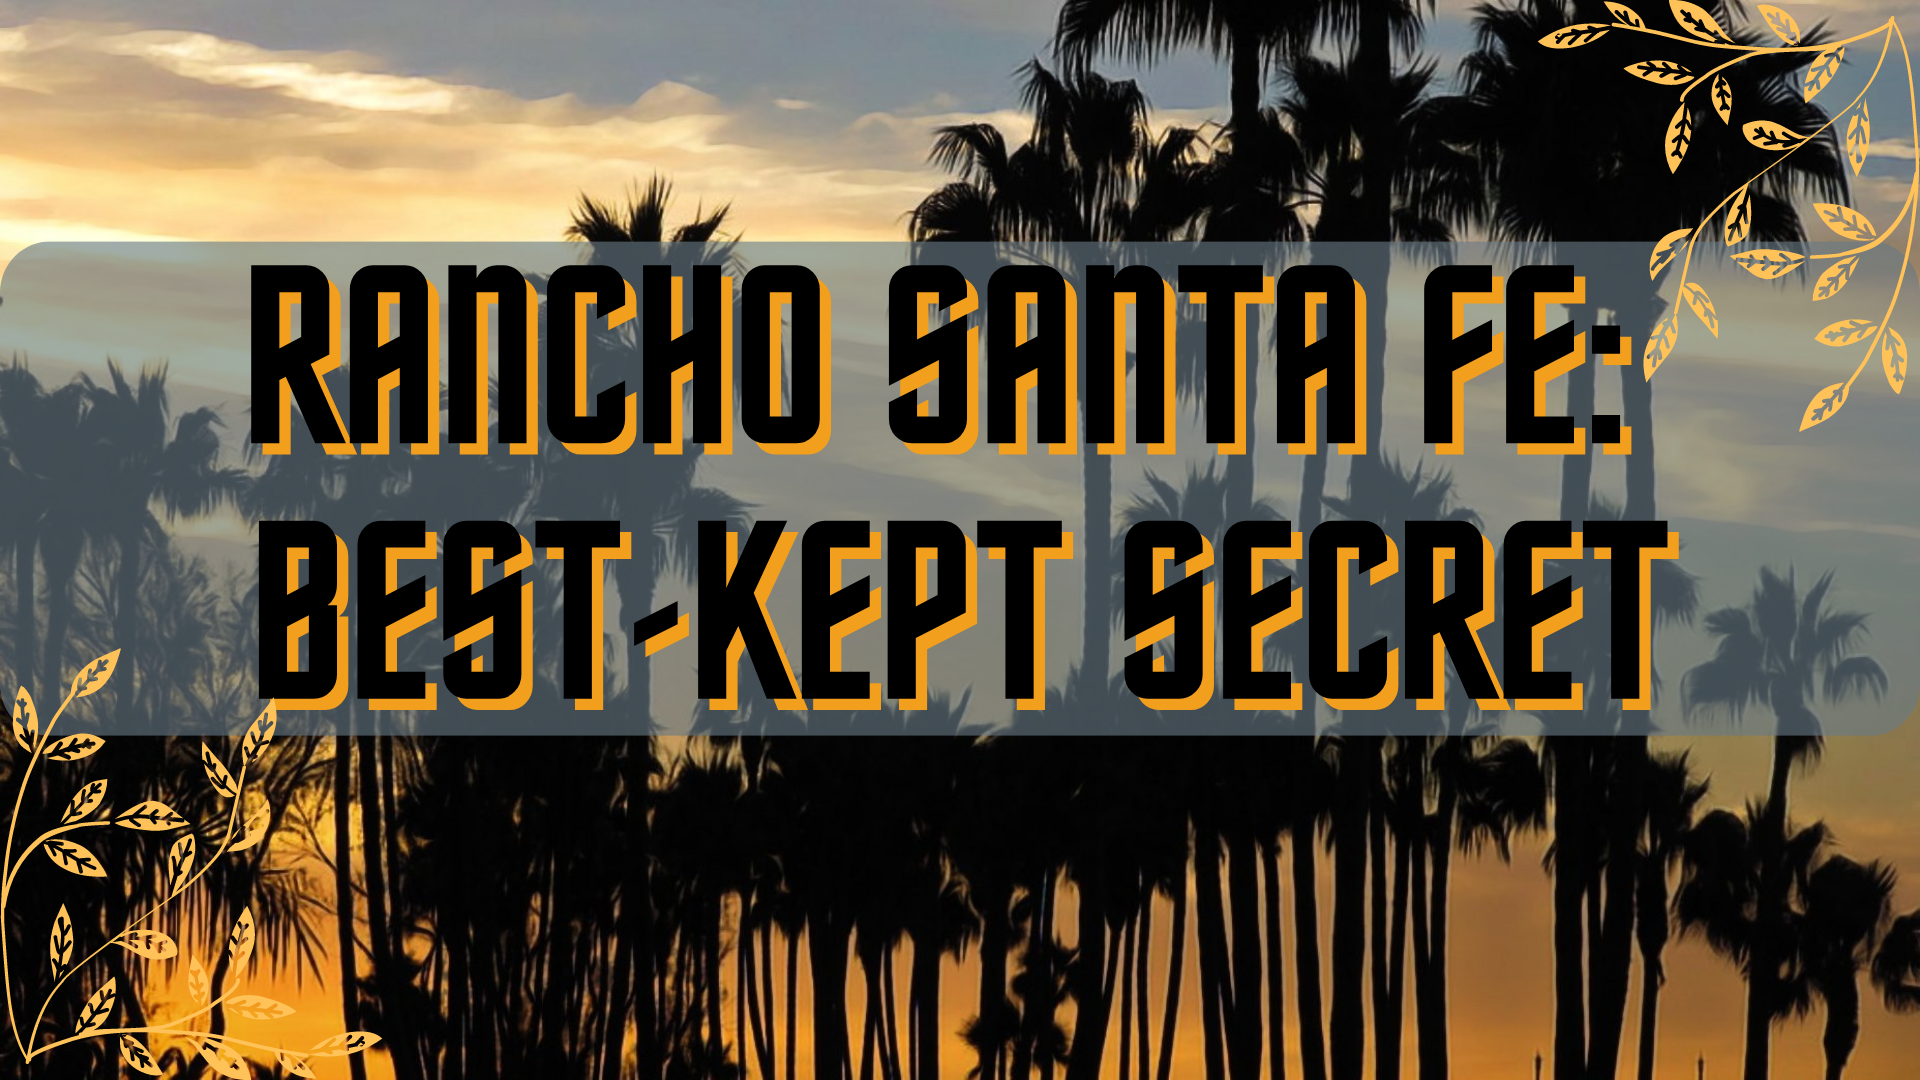 Rancho Santa Fe Best Kept Secret Video Documentary